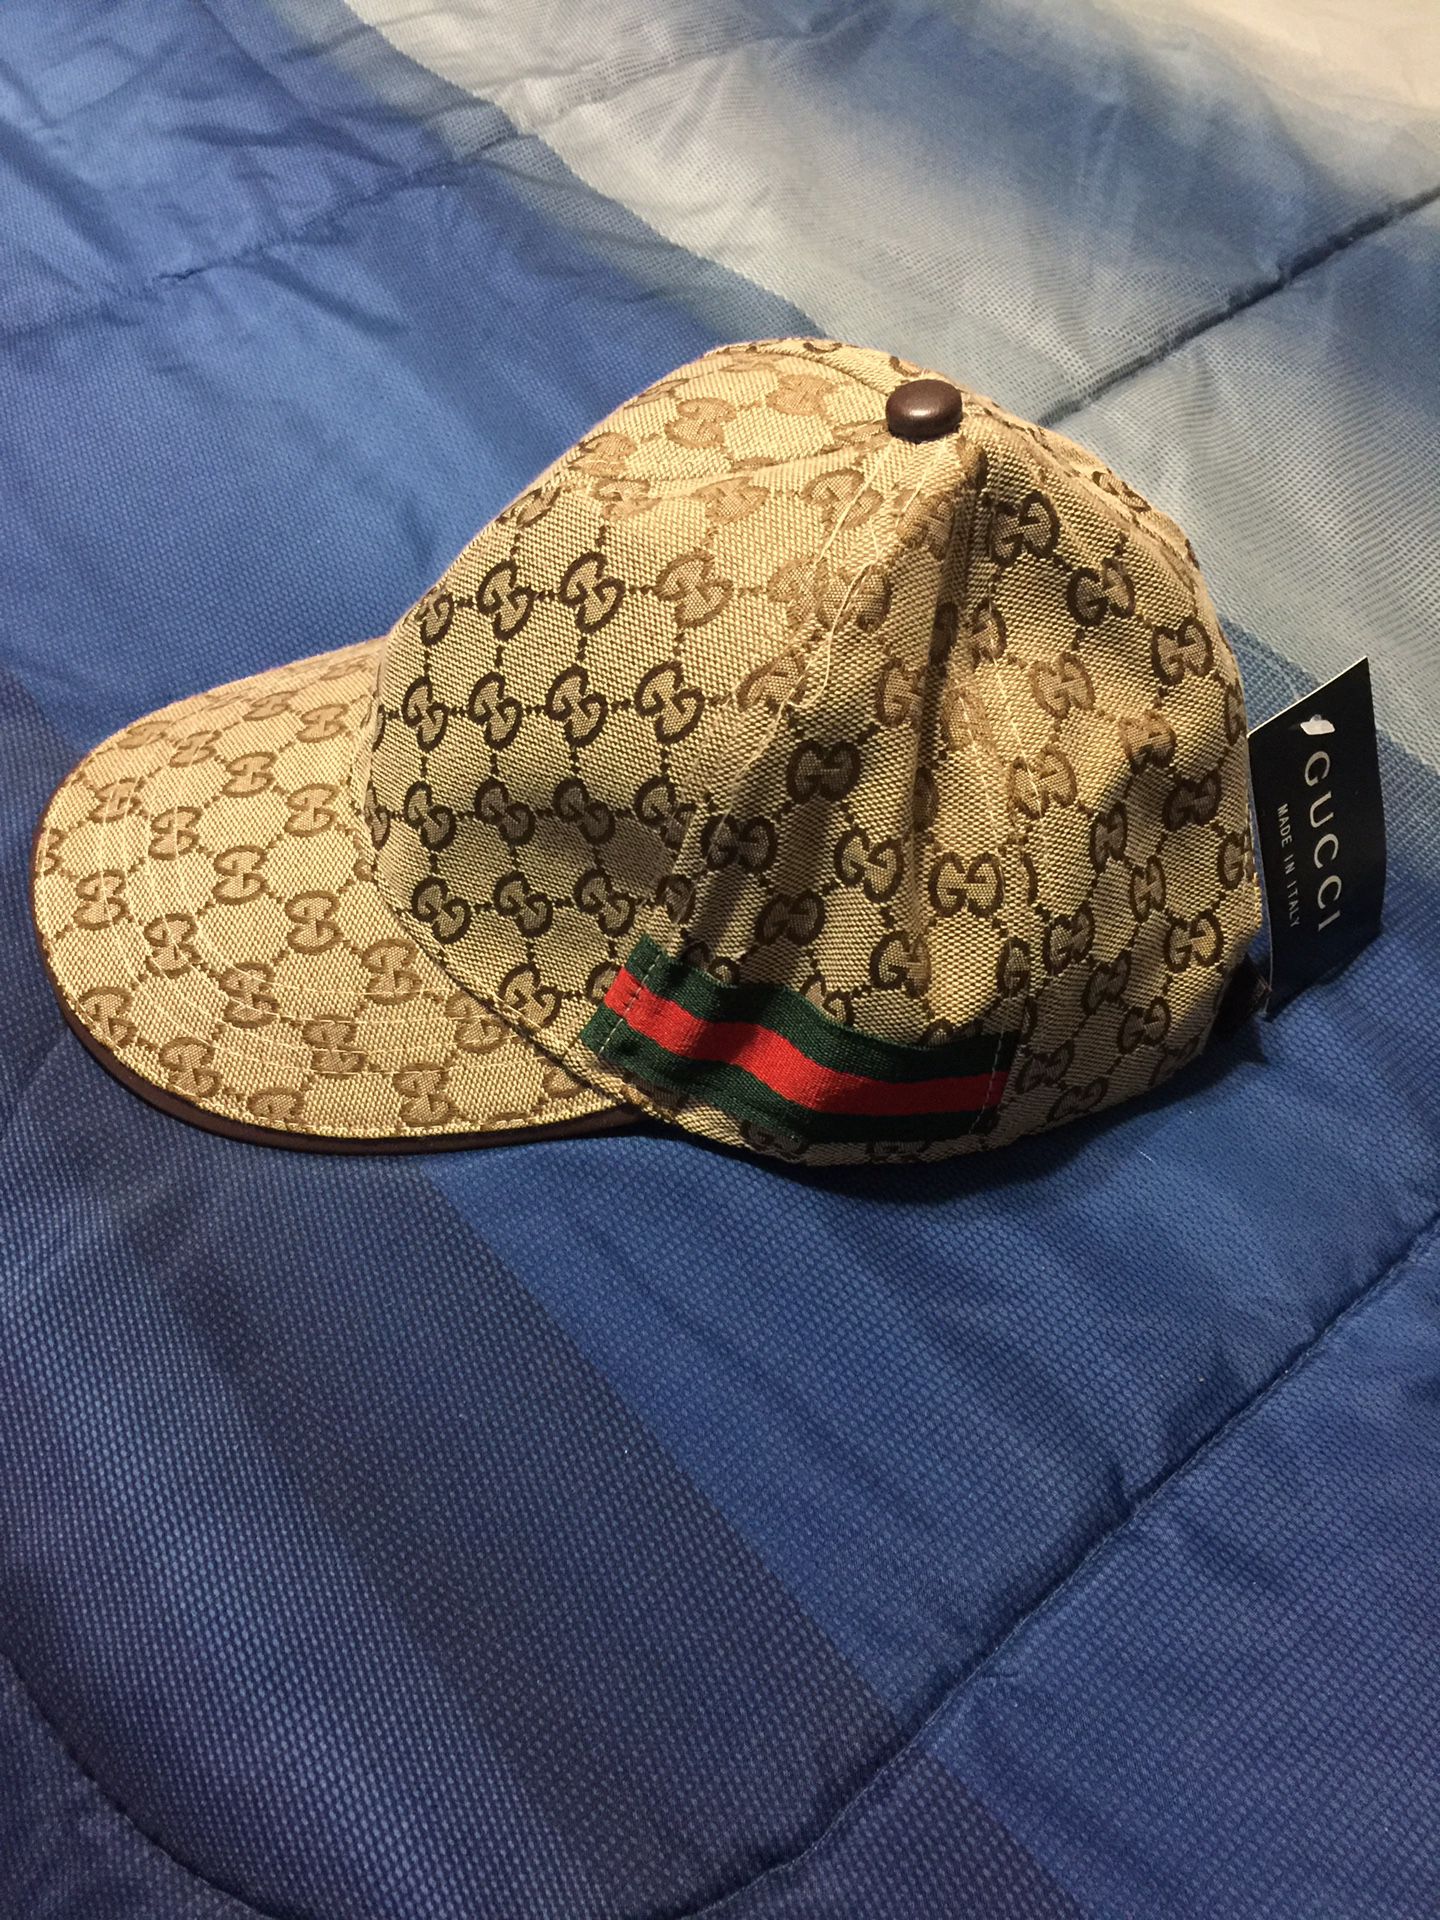 $75 Gucci hat